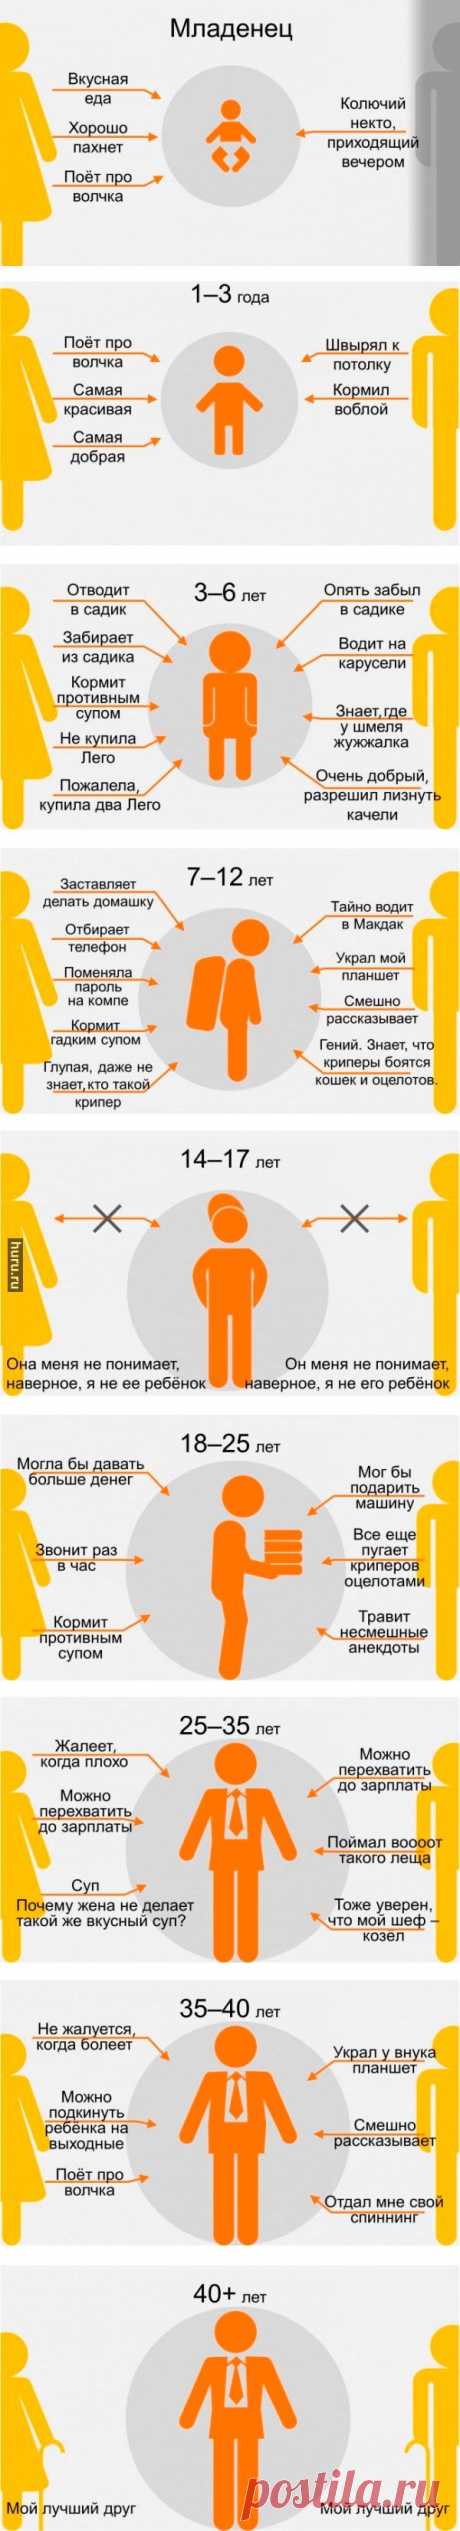 Родители глазами ребёнка в разном возрасте (9 стадий)